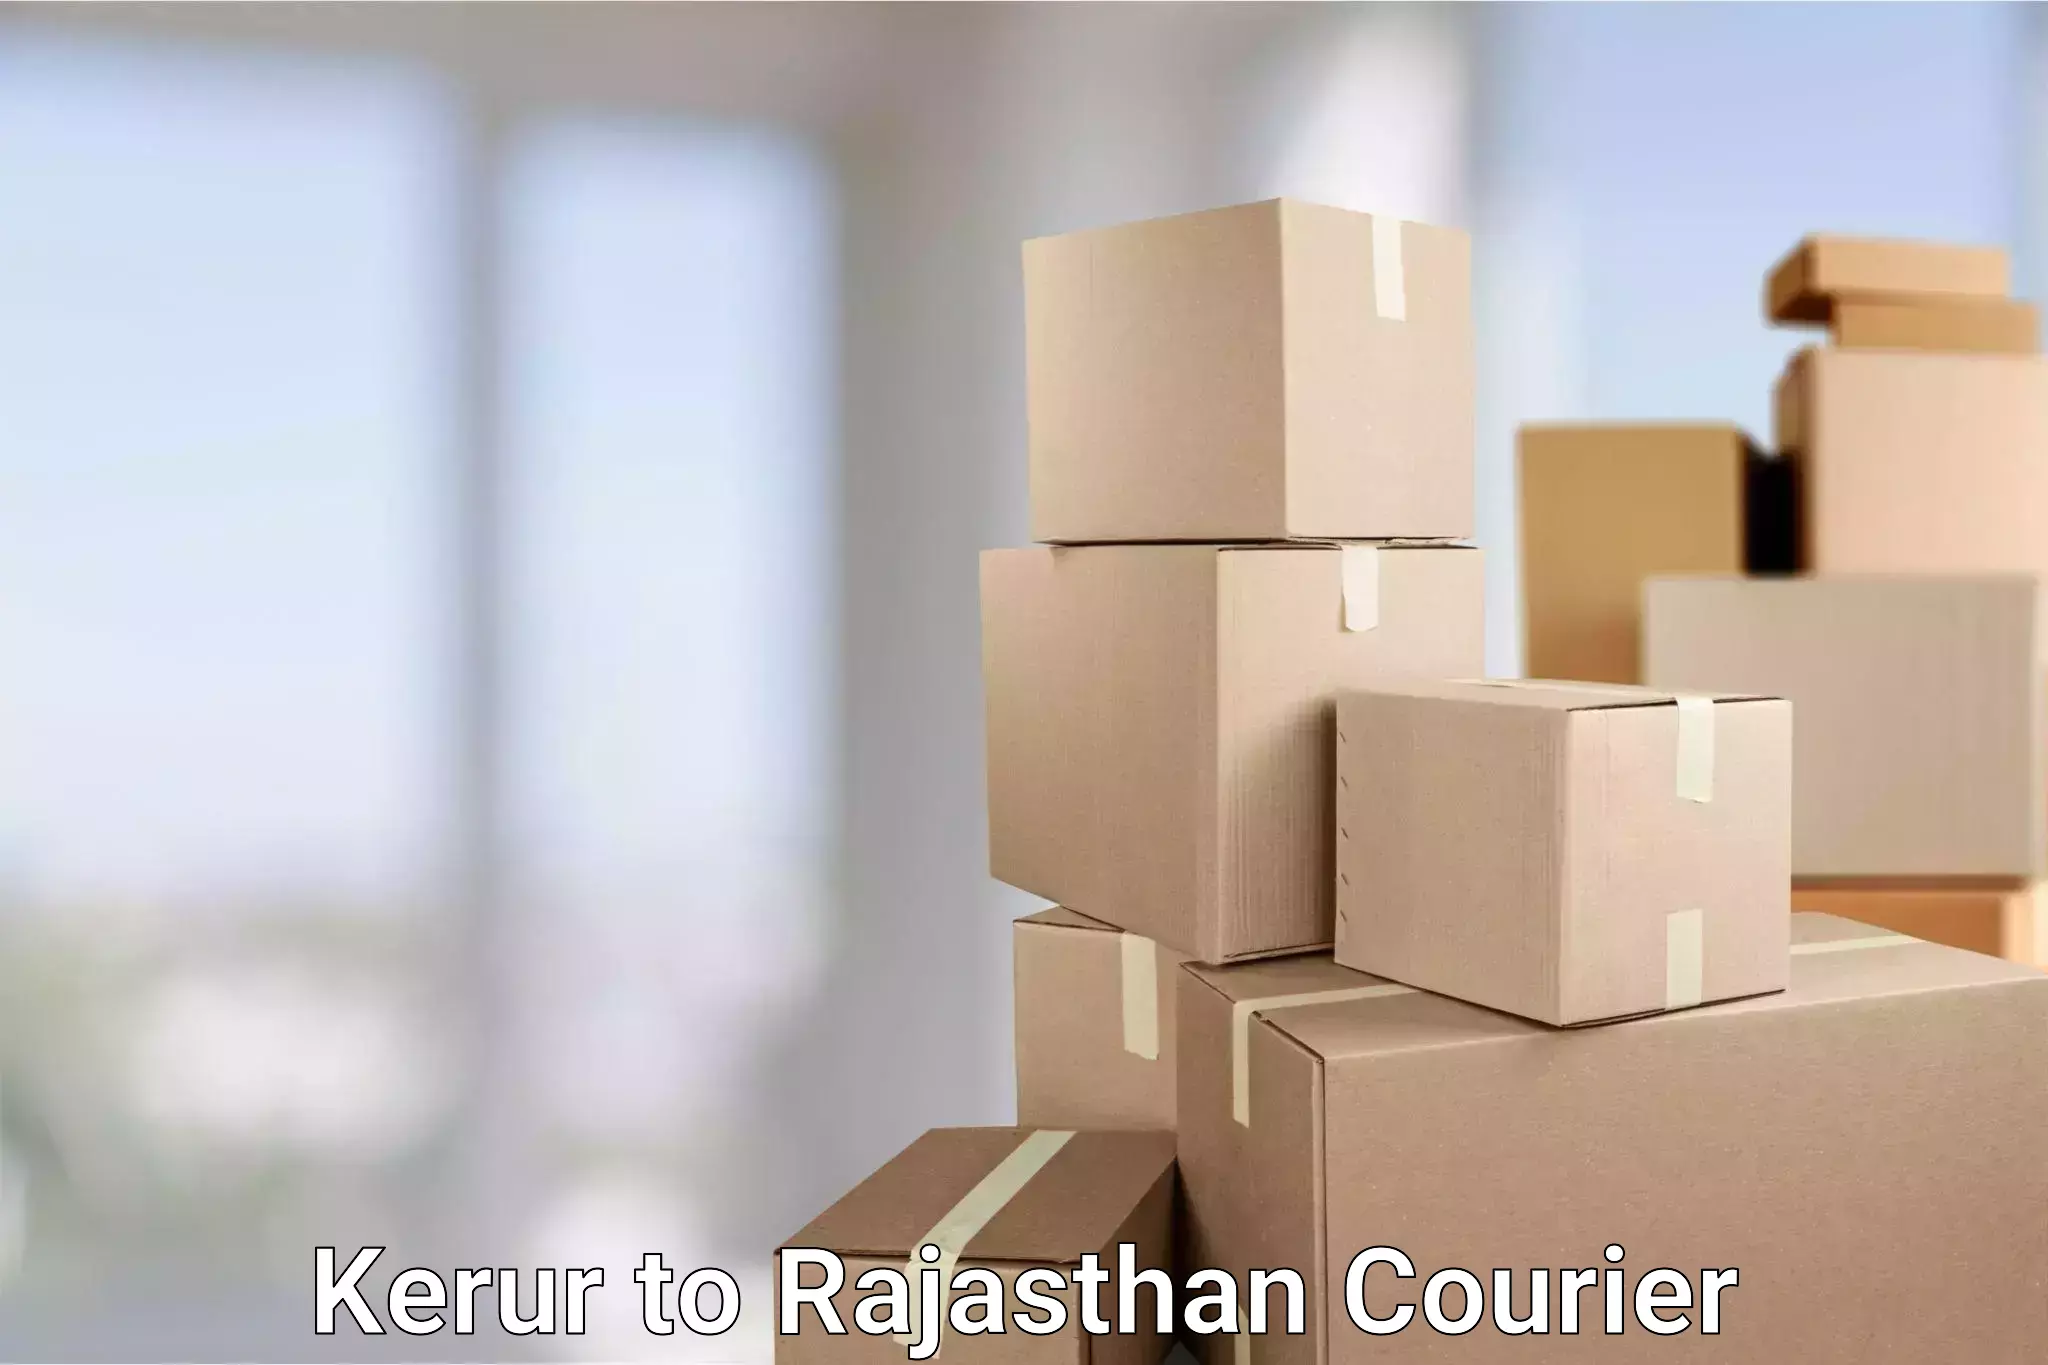 Courier service comparison Kerur to Asind